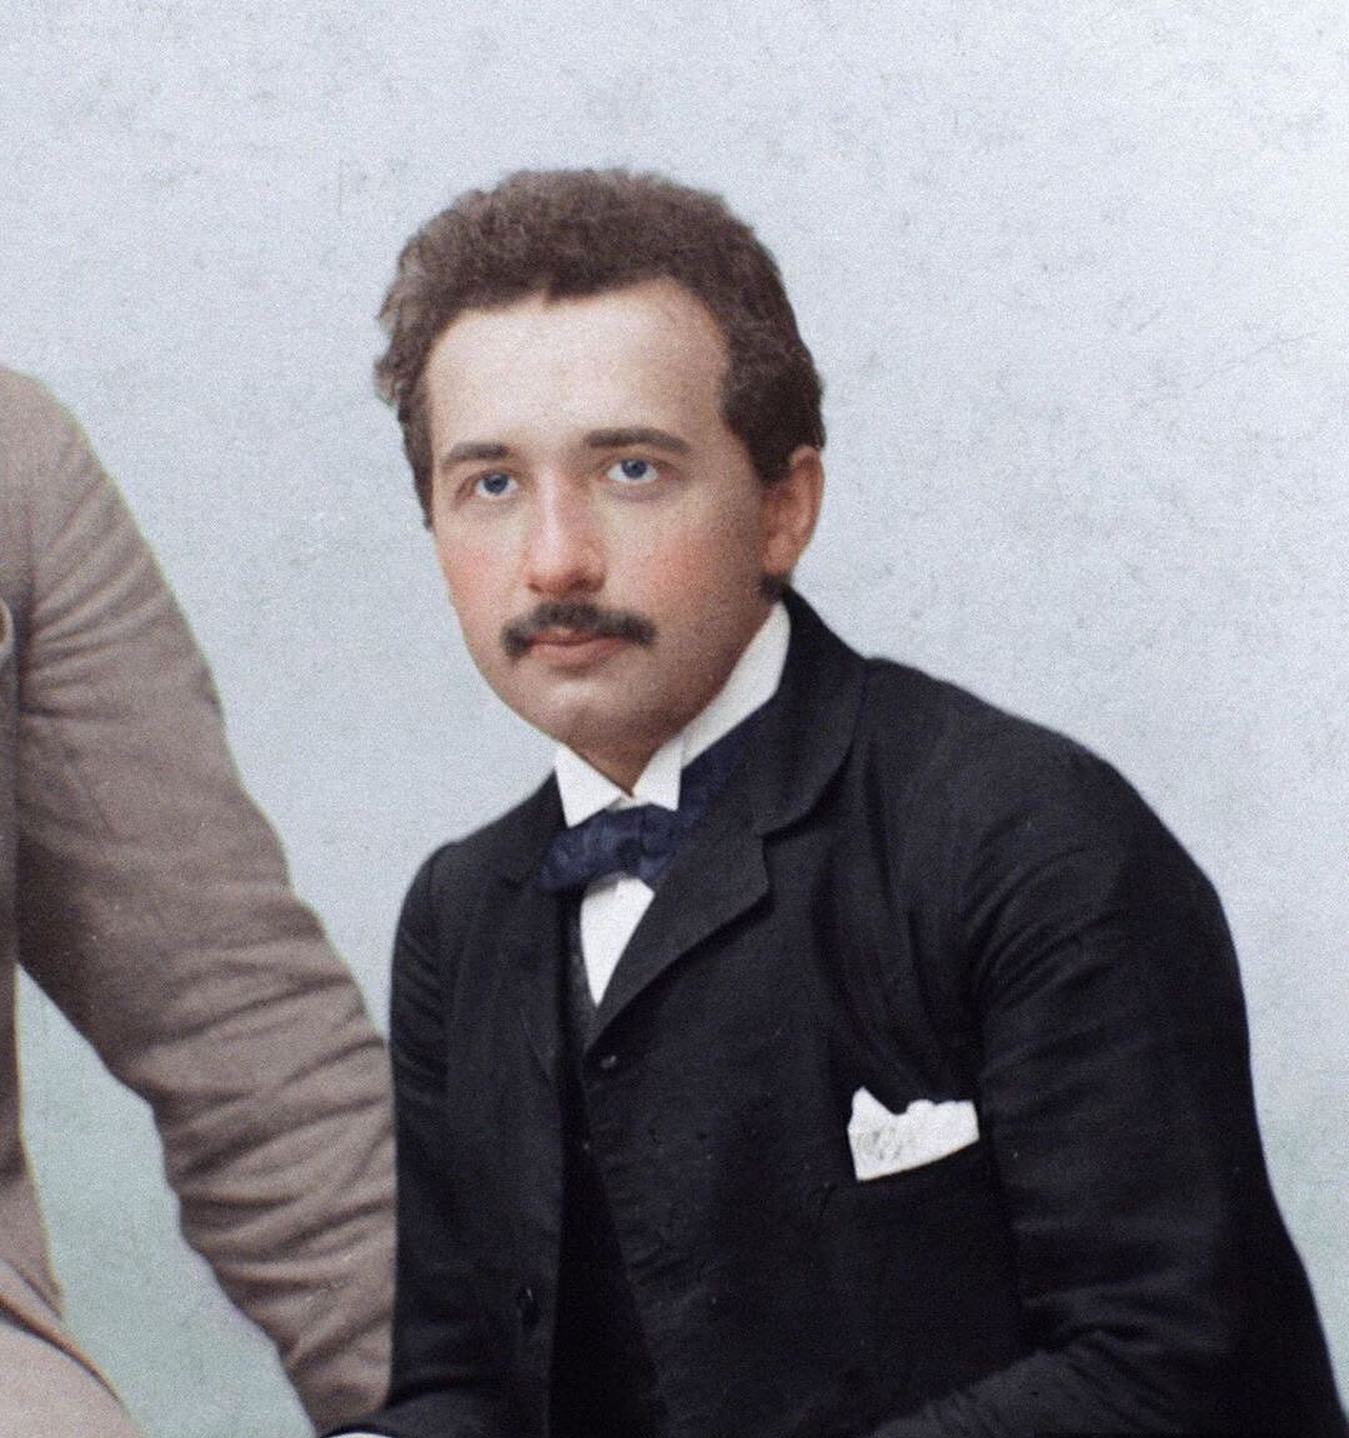 albert einstein pose pour une photo à zurich, en suisse, à l’âge de 24 ans en 1903.